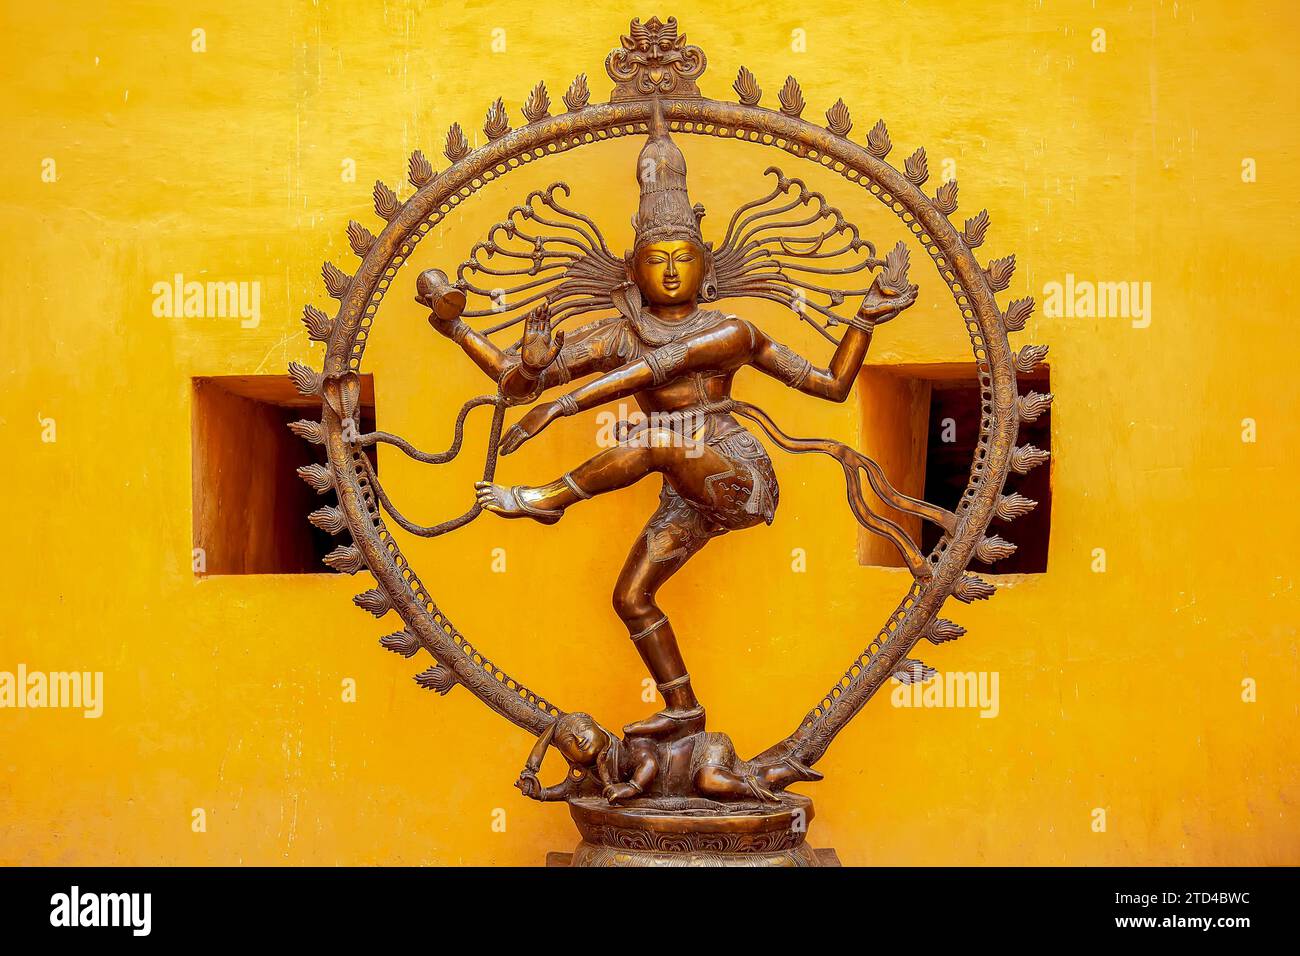 Statue der hinduistischen Göttin Kali. Die hinduistische Göttin Kali ist der ultimative Ausdruck der Natur, sowohl zerstörerisch als auch wohlwollend Stockfoto